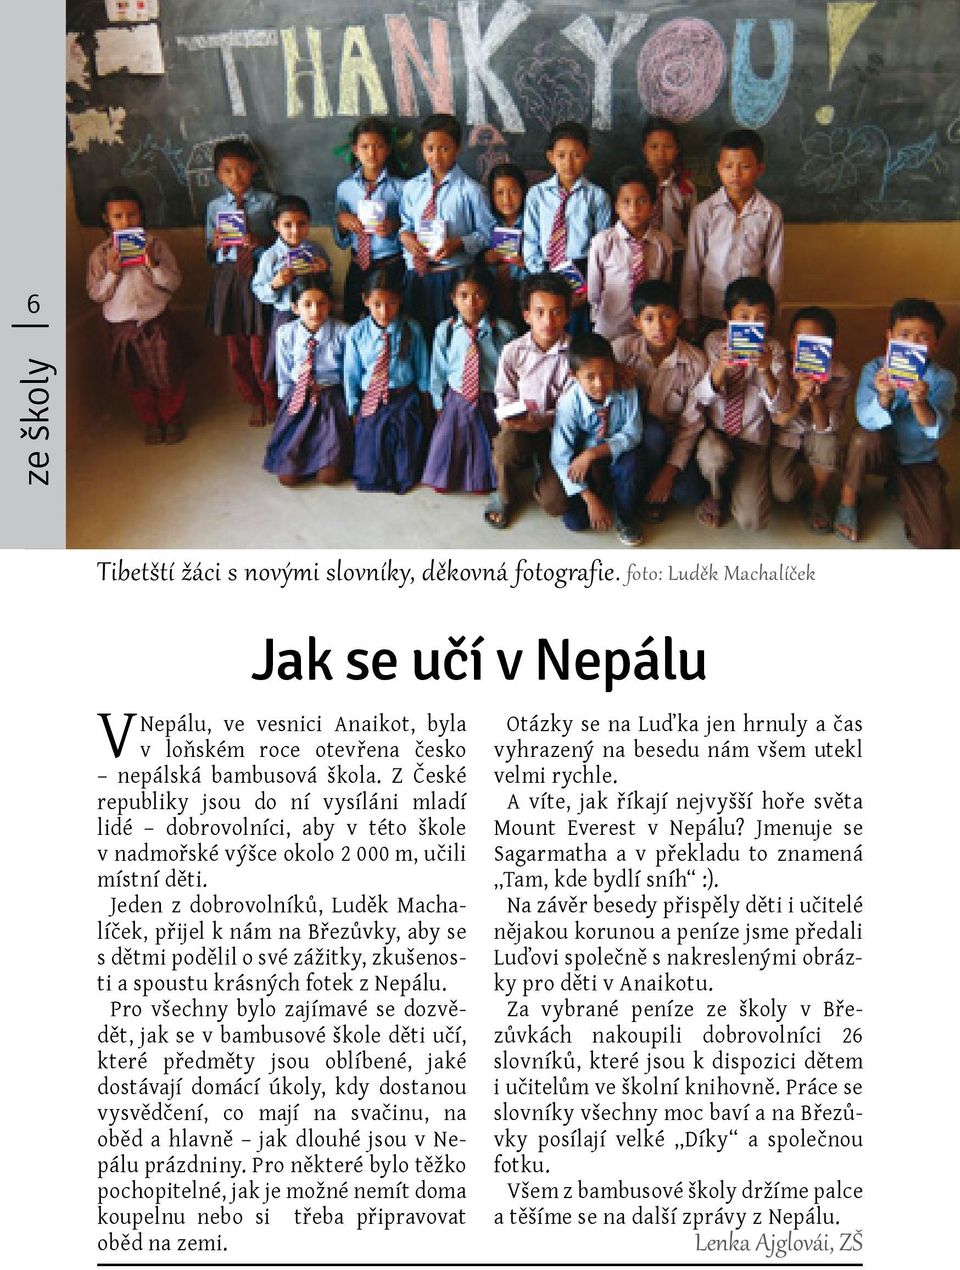 Jeden z dobrovolníků, Luděk Machalíček, přijel k nám na Březůvky, aby se s dětmi podělil o své zážitky, zkušenosti a spoustu krásných fotek z Nepálu.